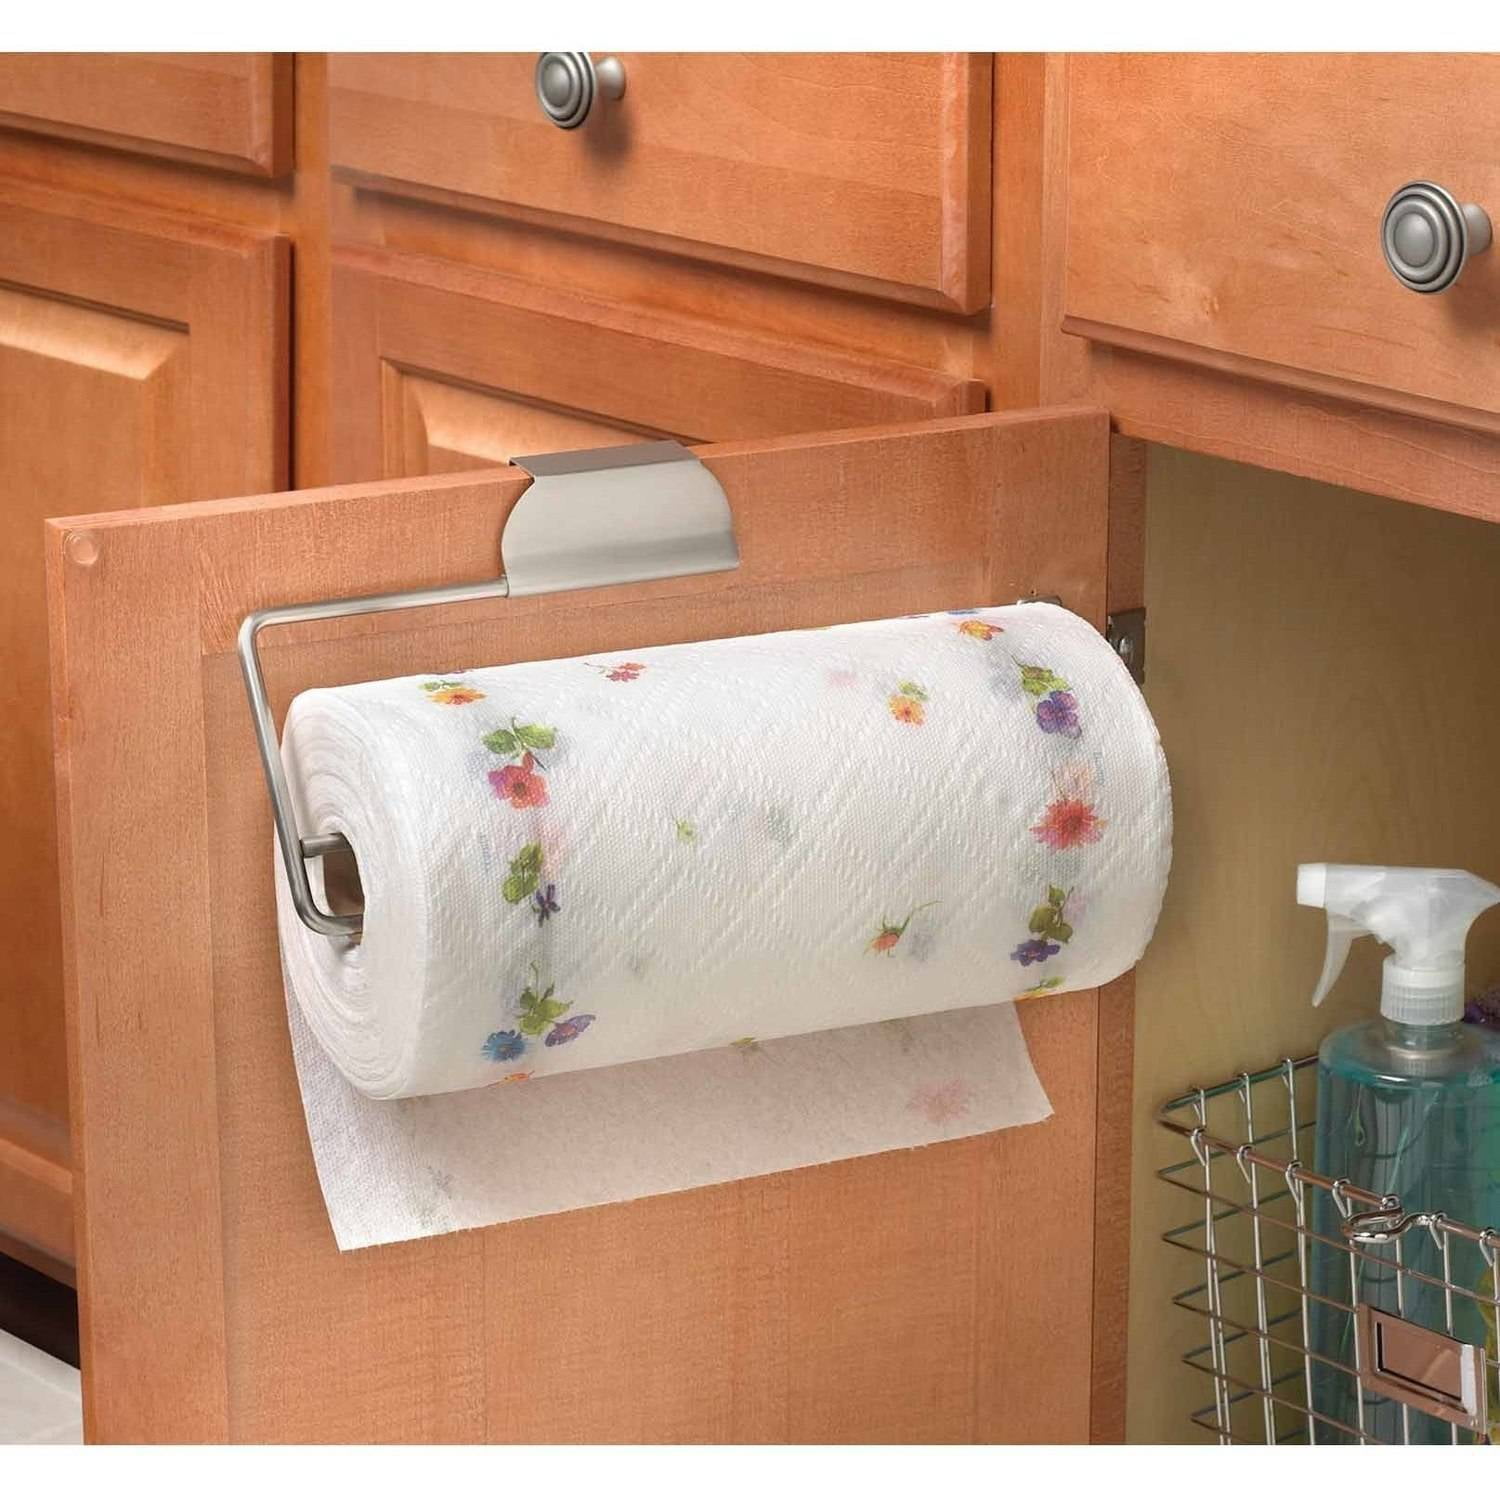 Good Looking over the door kitchen towel bar Spectrum Diversified 76771 Over The Door Paper Towel Holder Walmart Com